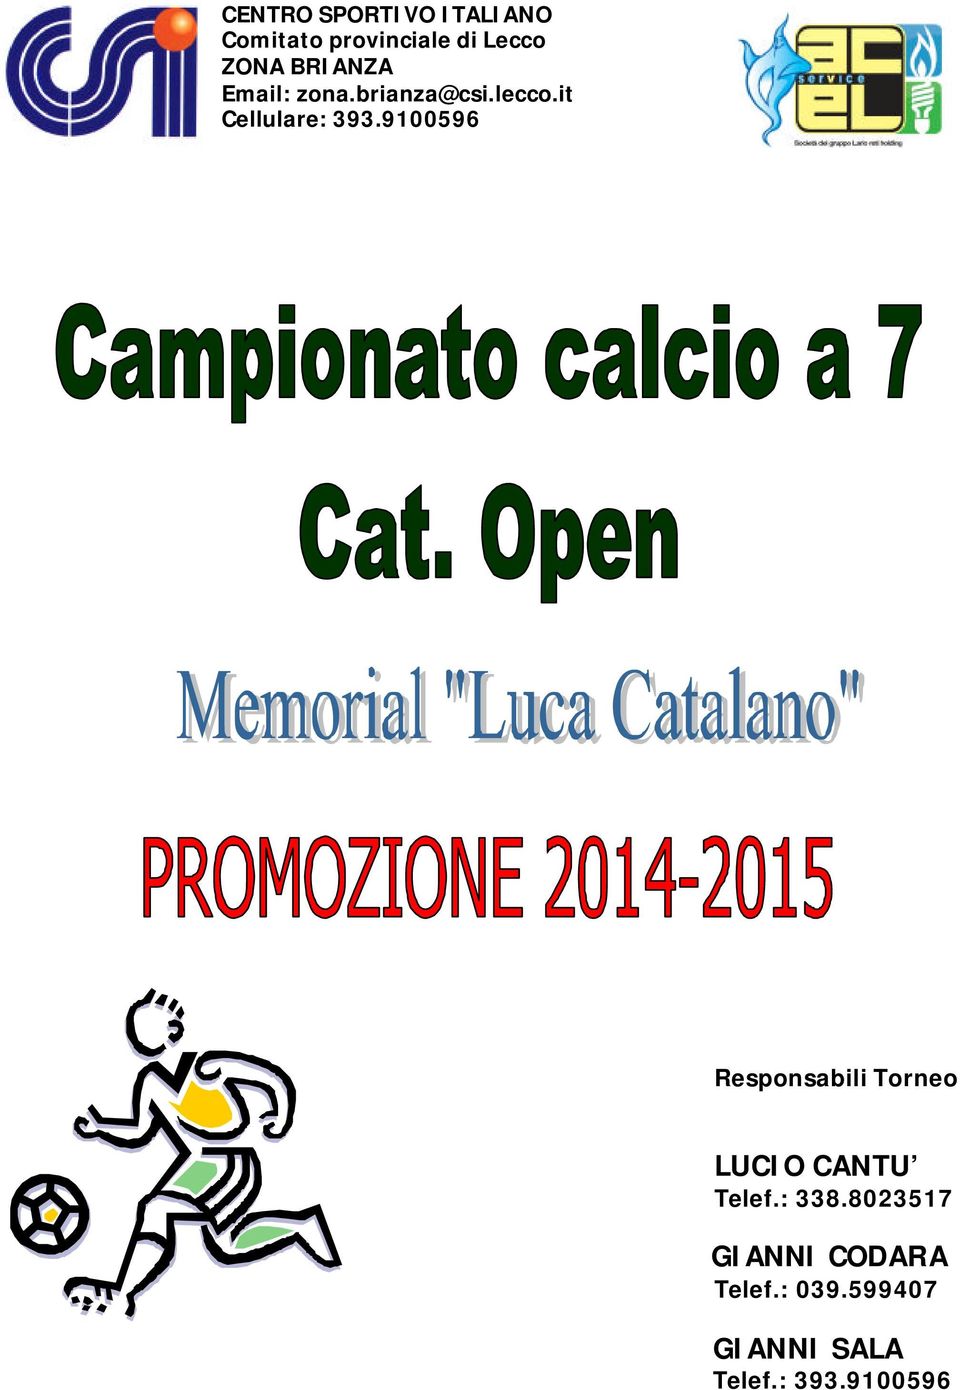 9100596 Responsabili Torneo LUCIO CANTU Telef.: 338.